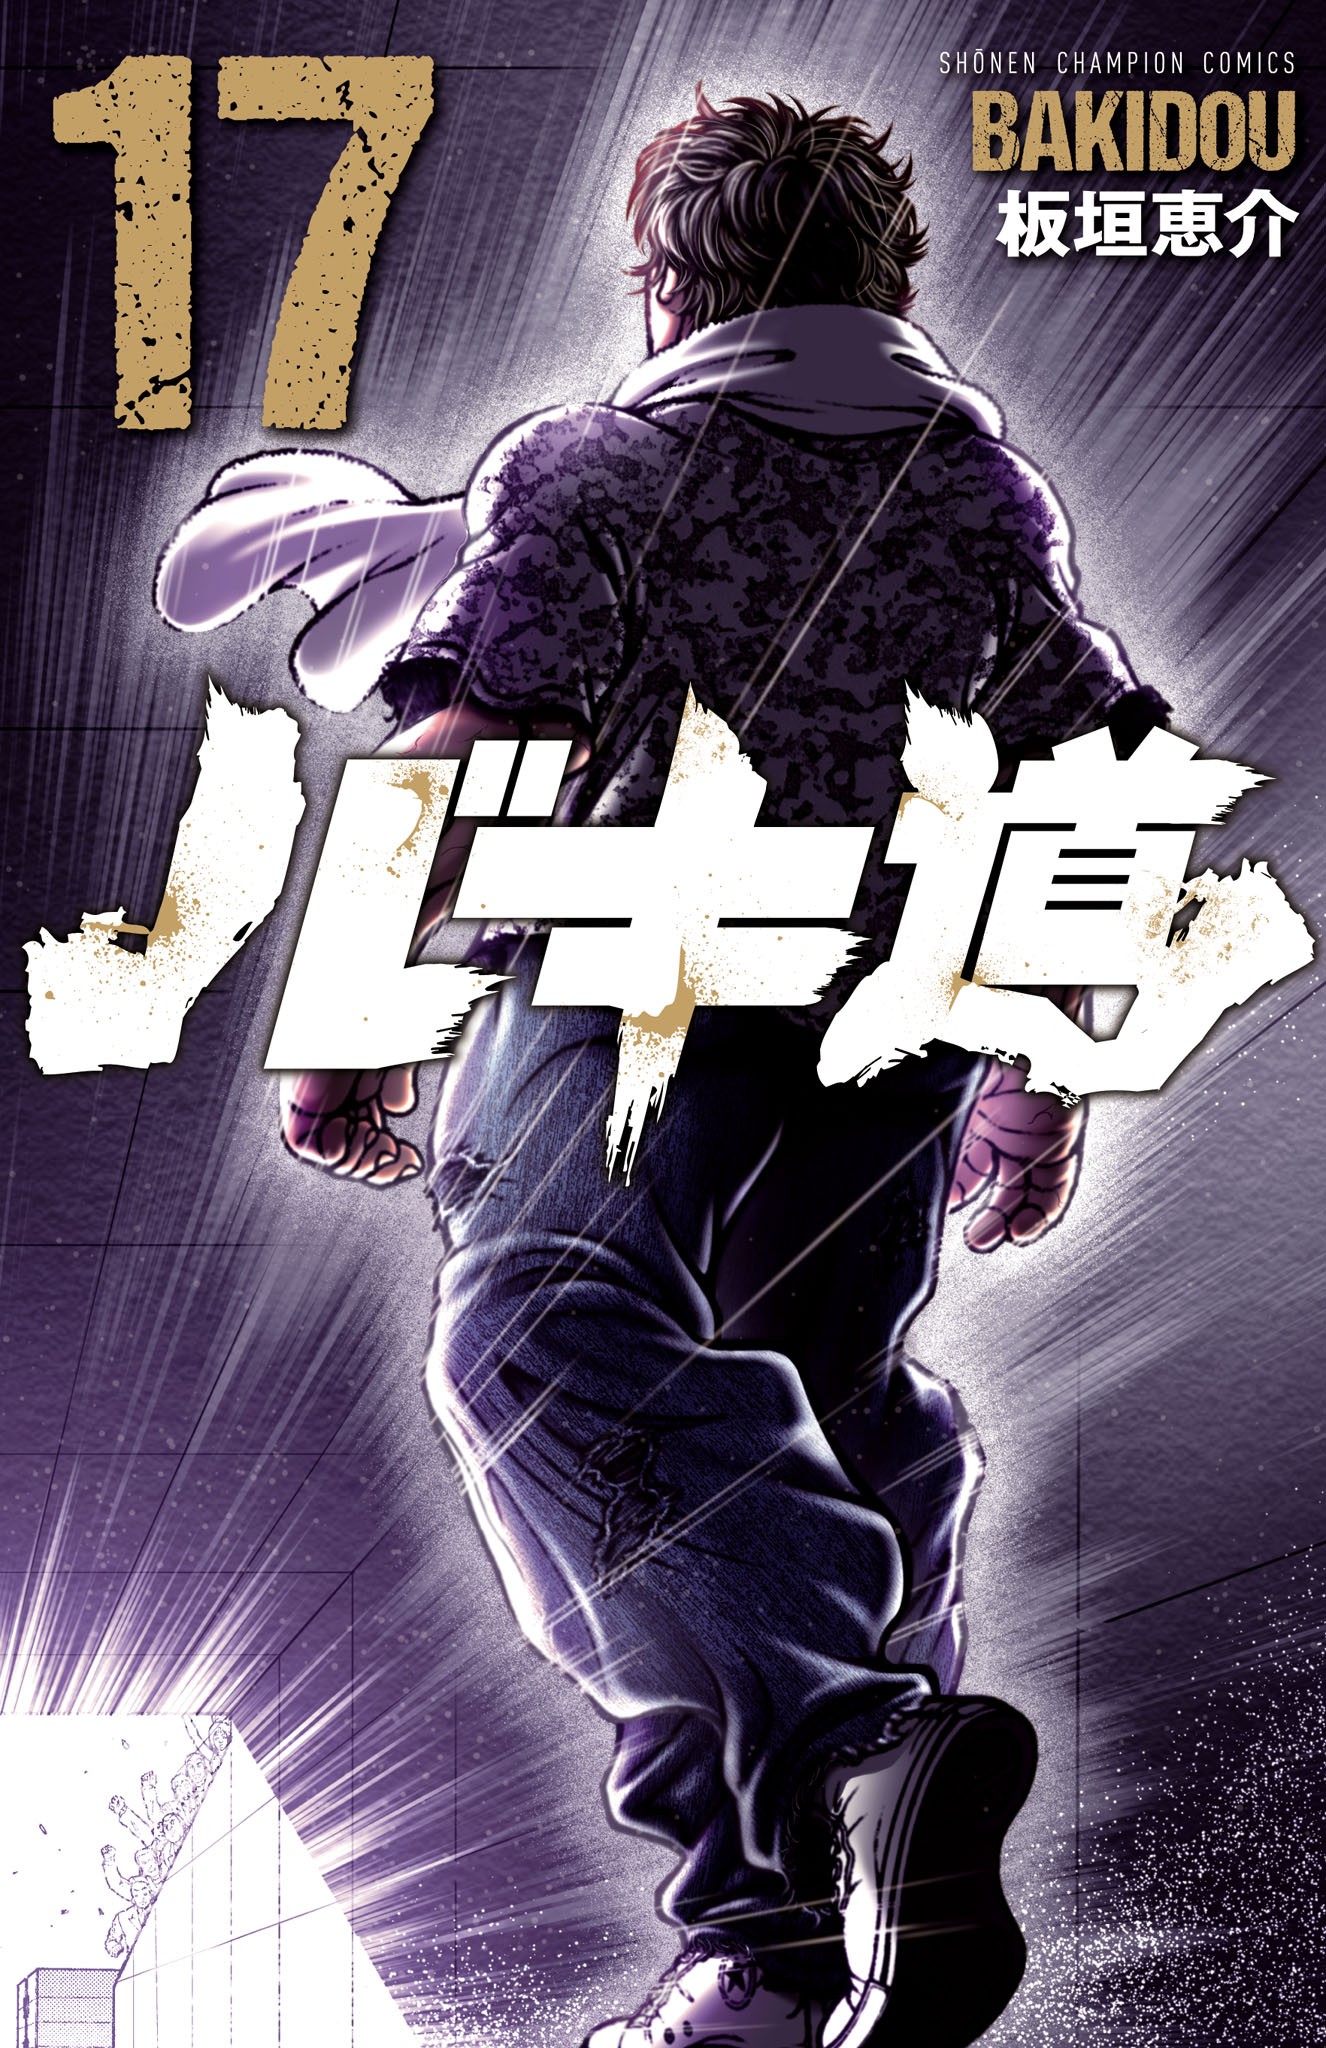 Japanese comic manga anime BAKI-DOU 14 Keisuke Itagaki Hanma